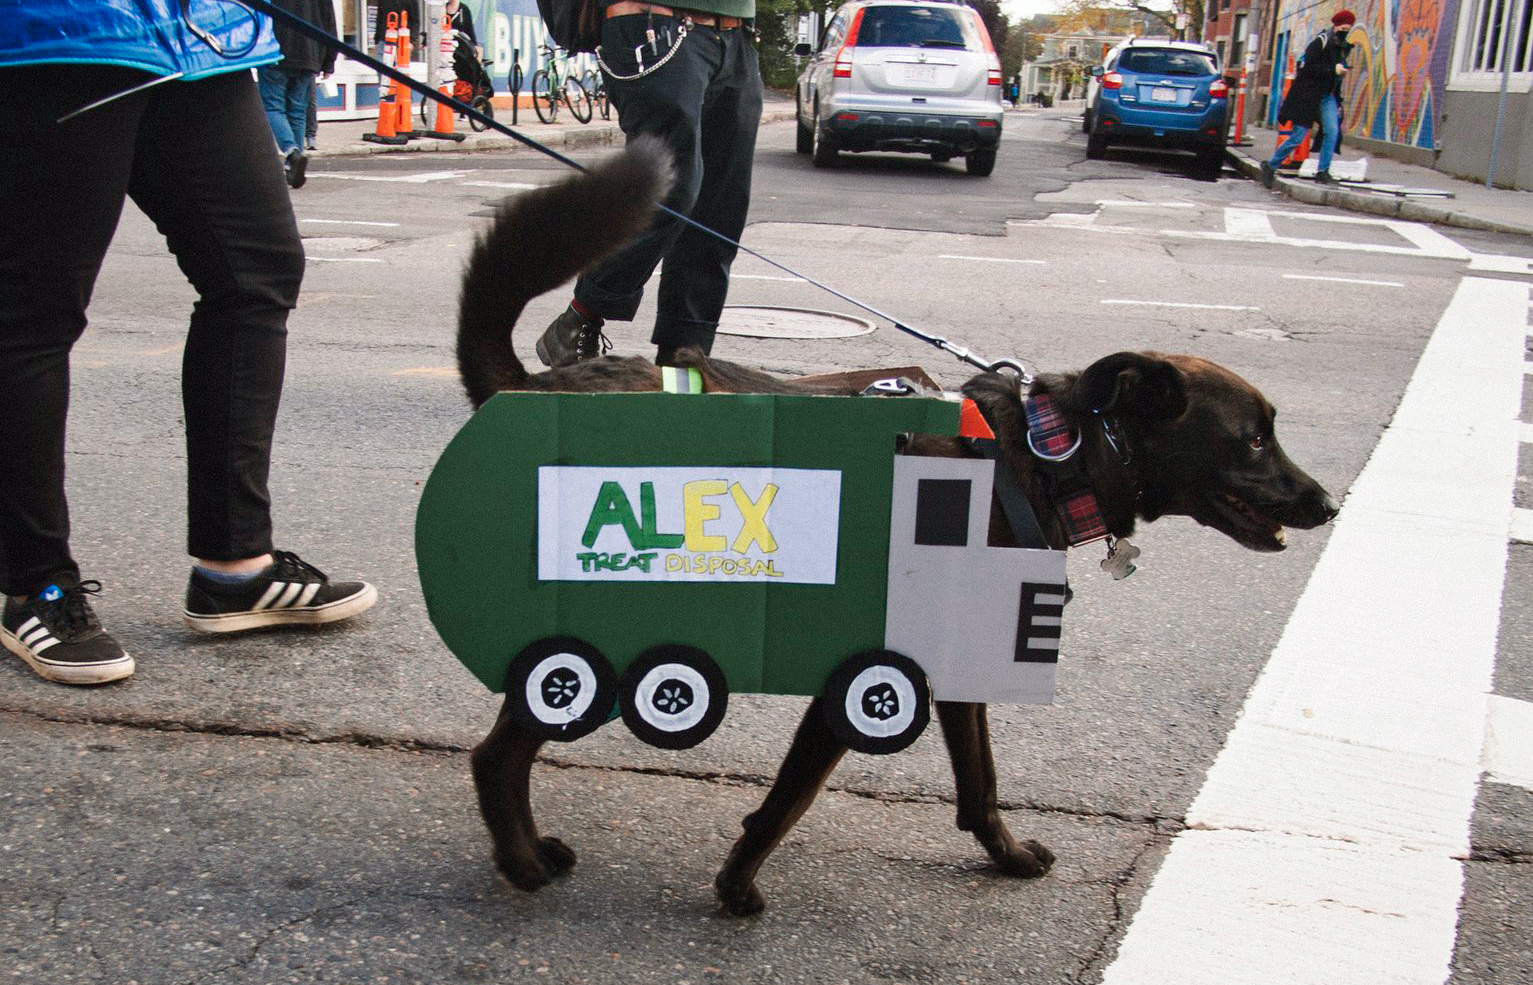 AlEx the garbage-seeking hound in Jamaica Plain